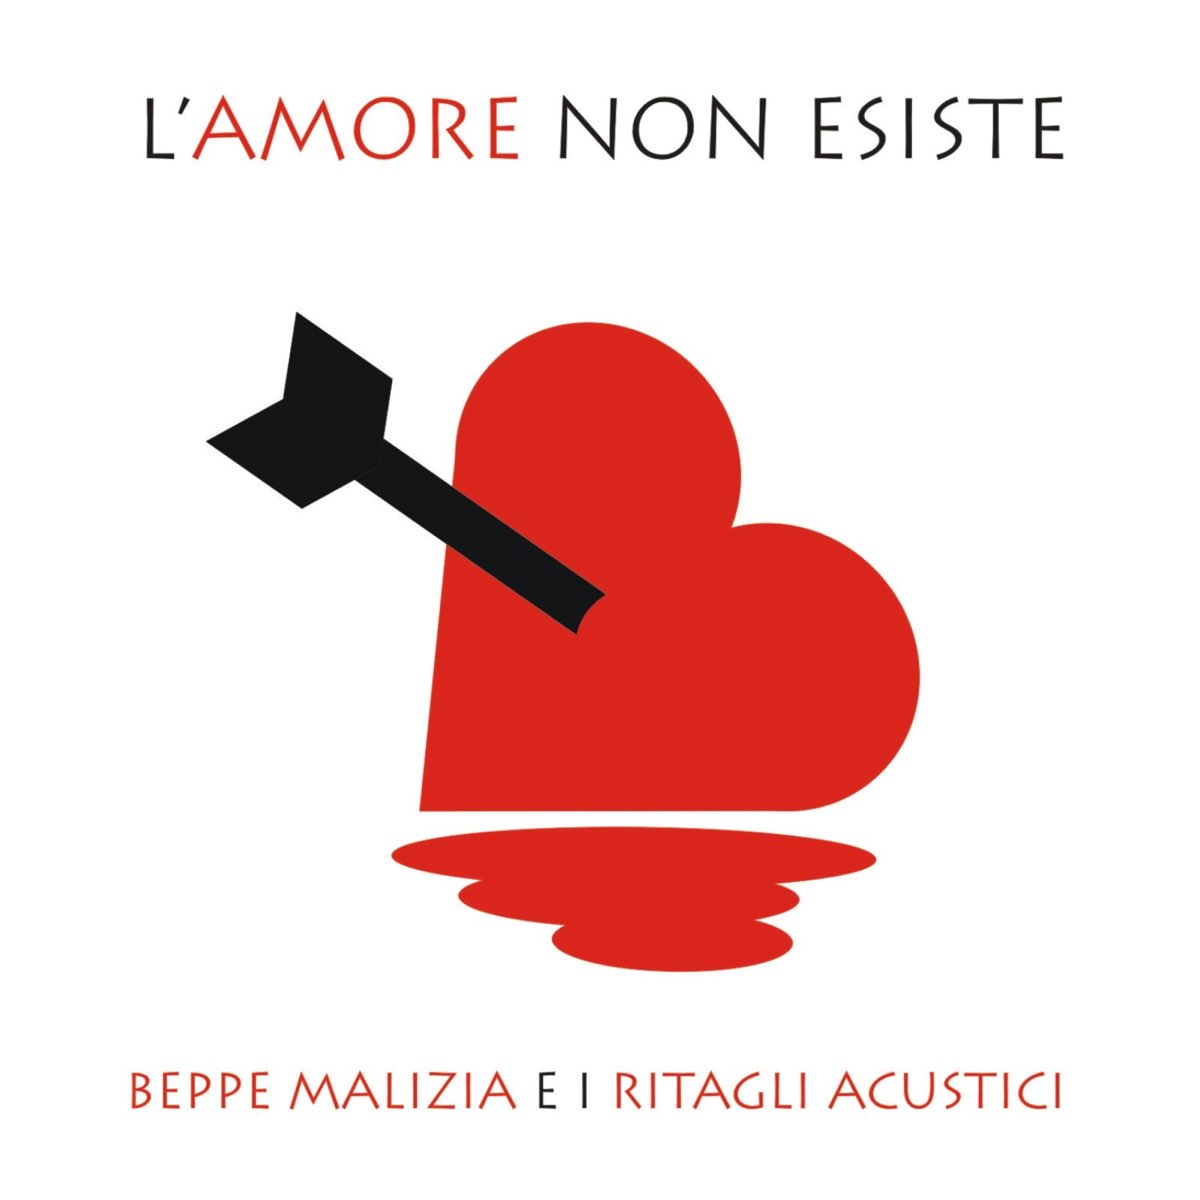 L amore dice ciao. Ламоре Эсисте. Песня l'Amore esiste. L'Amore esiste перевод на русский.